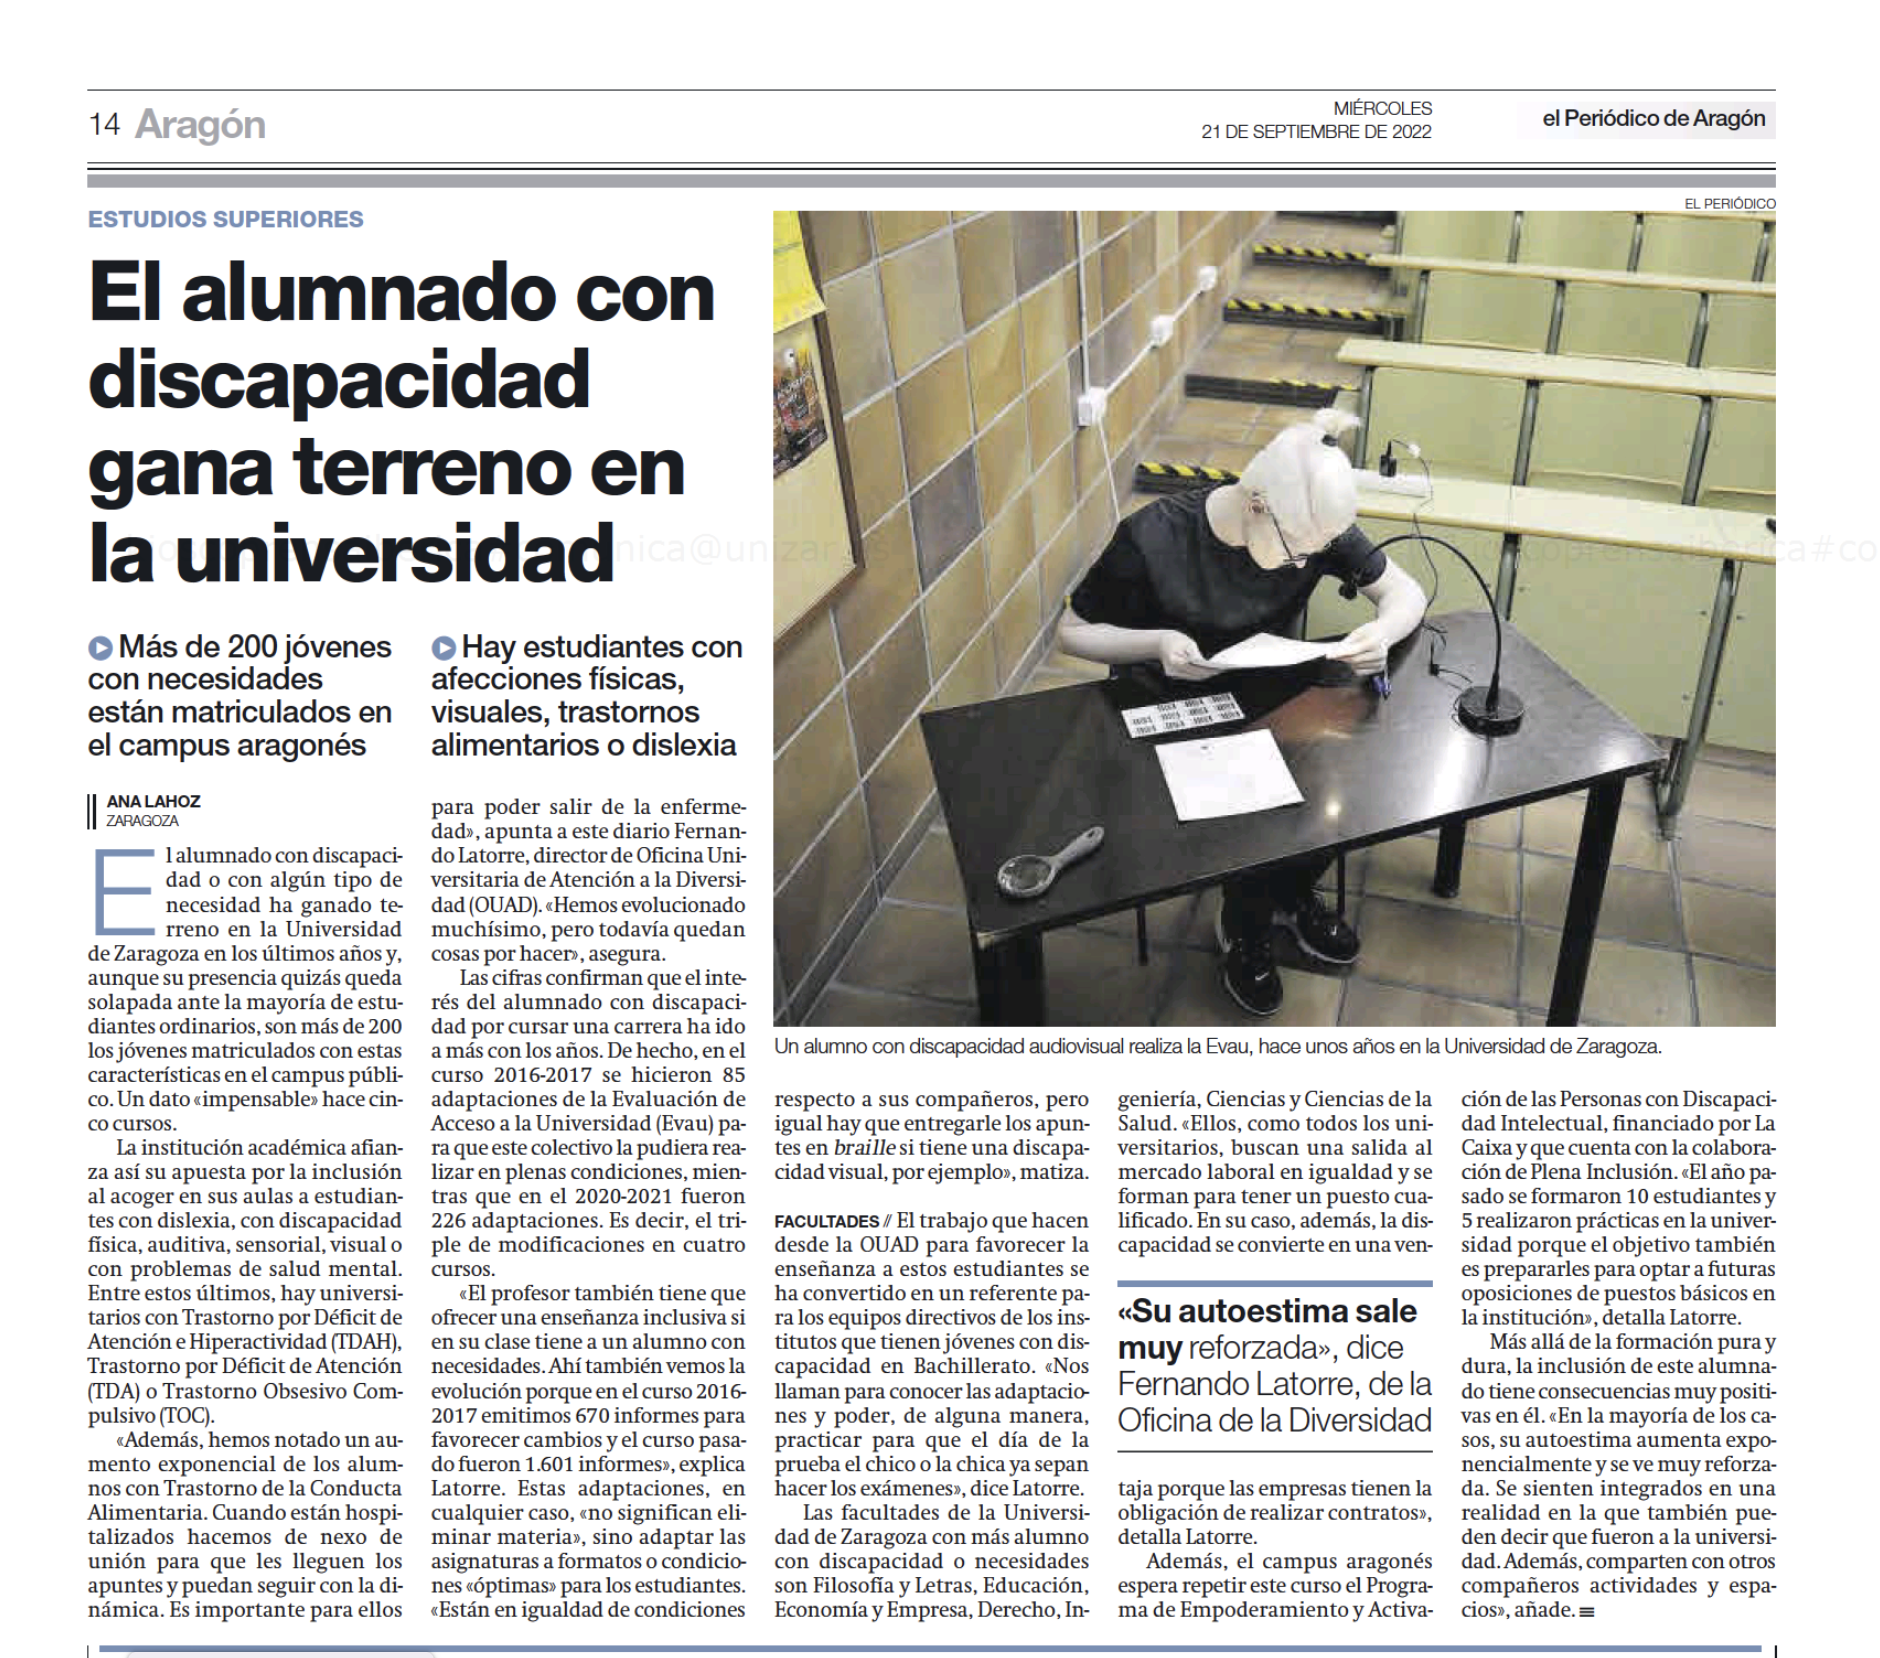 Imagen del artículo escrito de El Periódico de Aragon